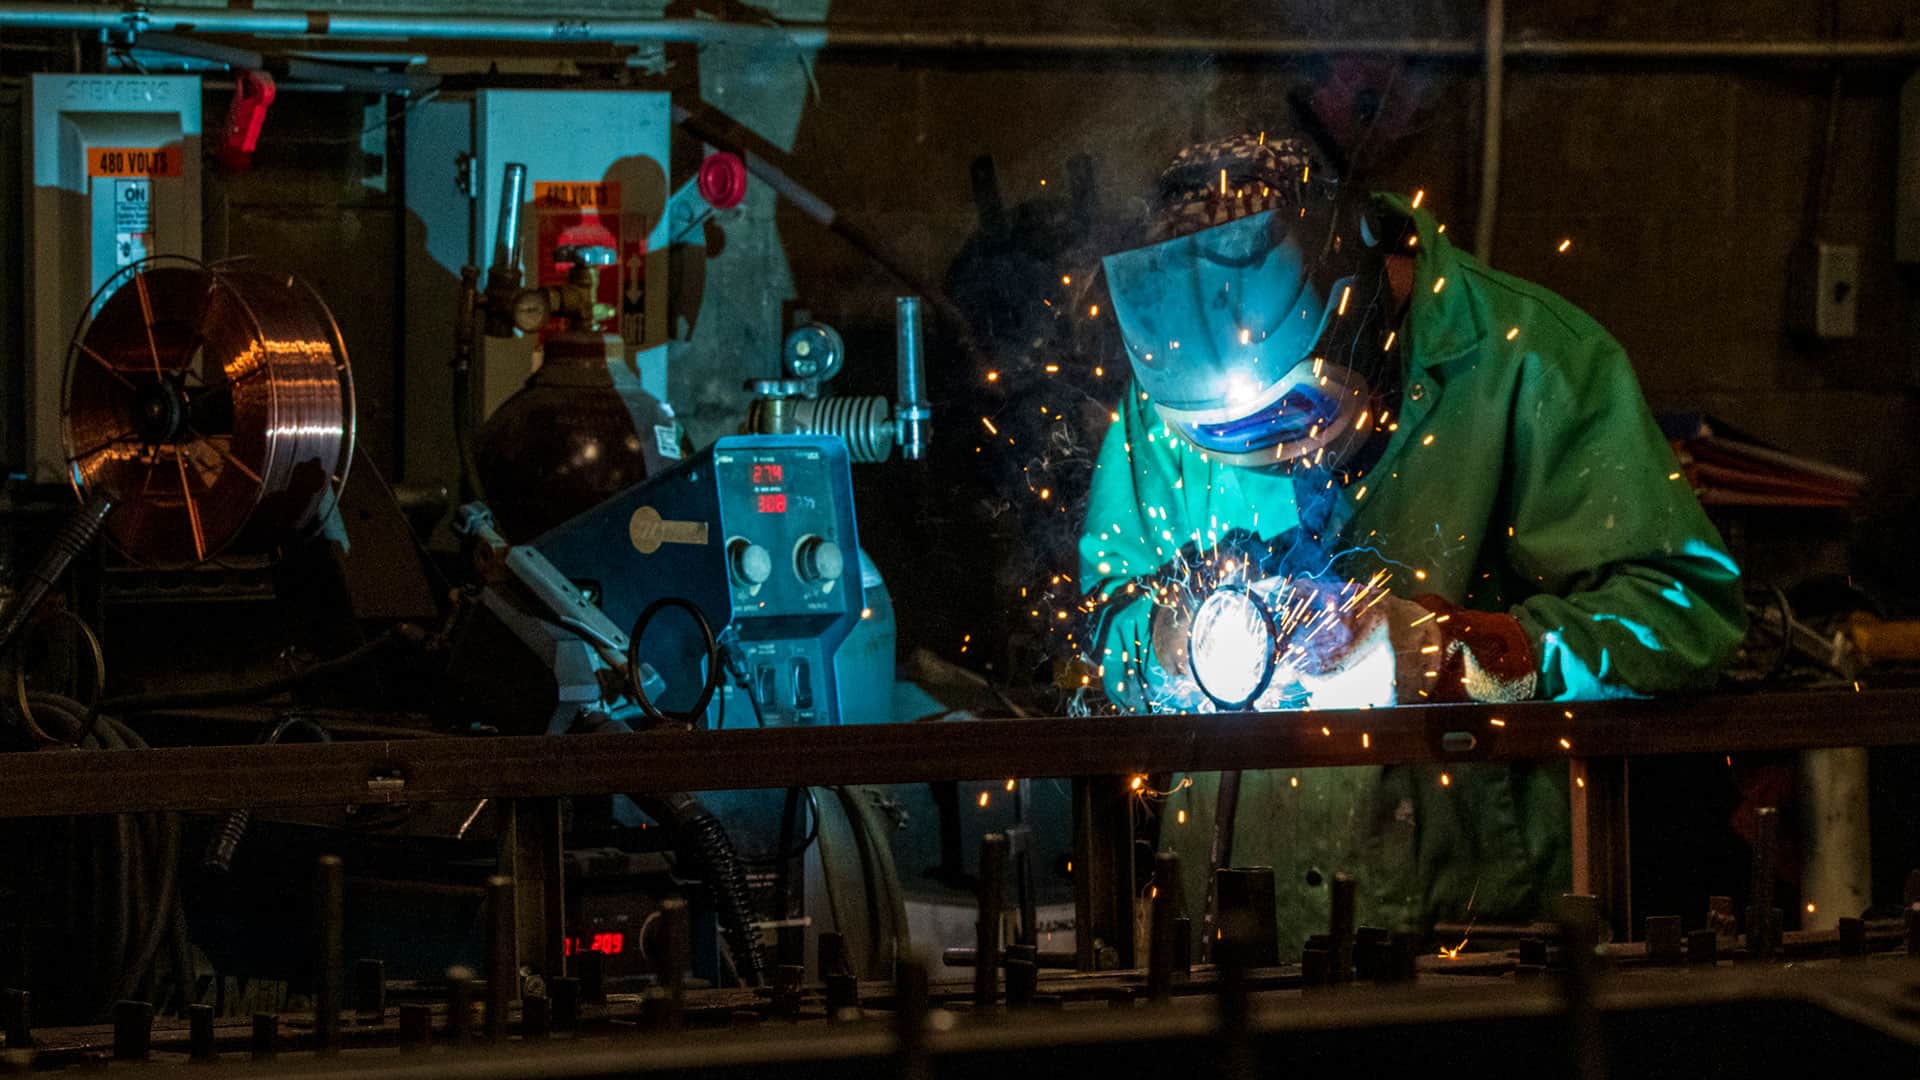 Frontal shot of a man welding in a blue glow